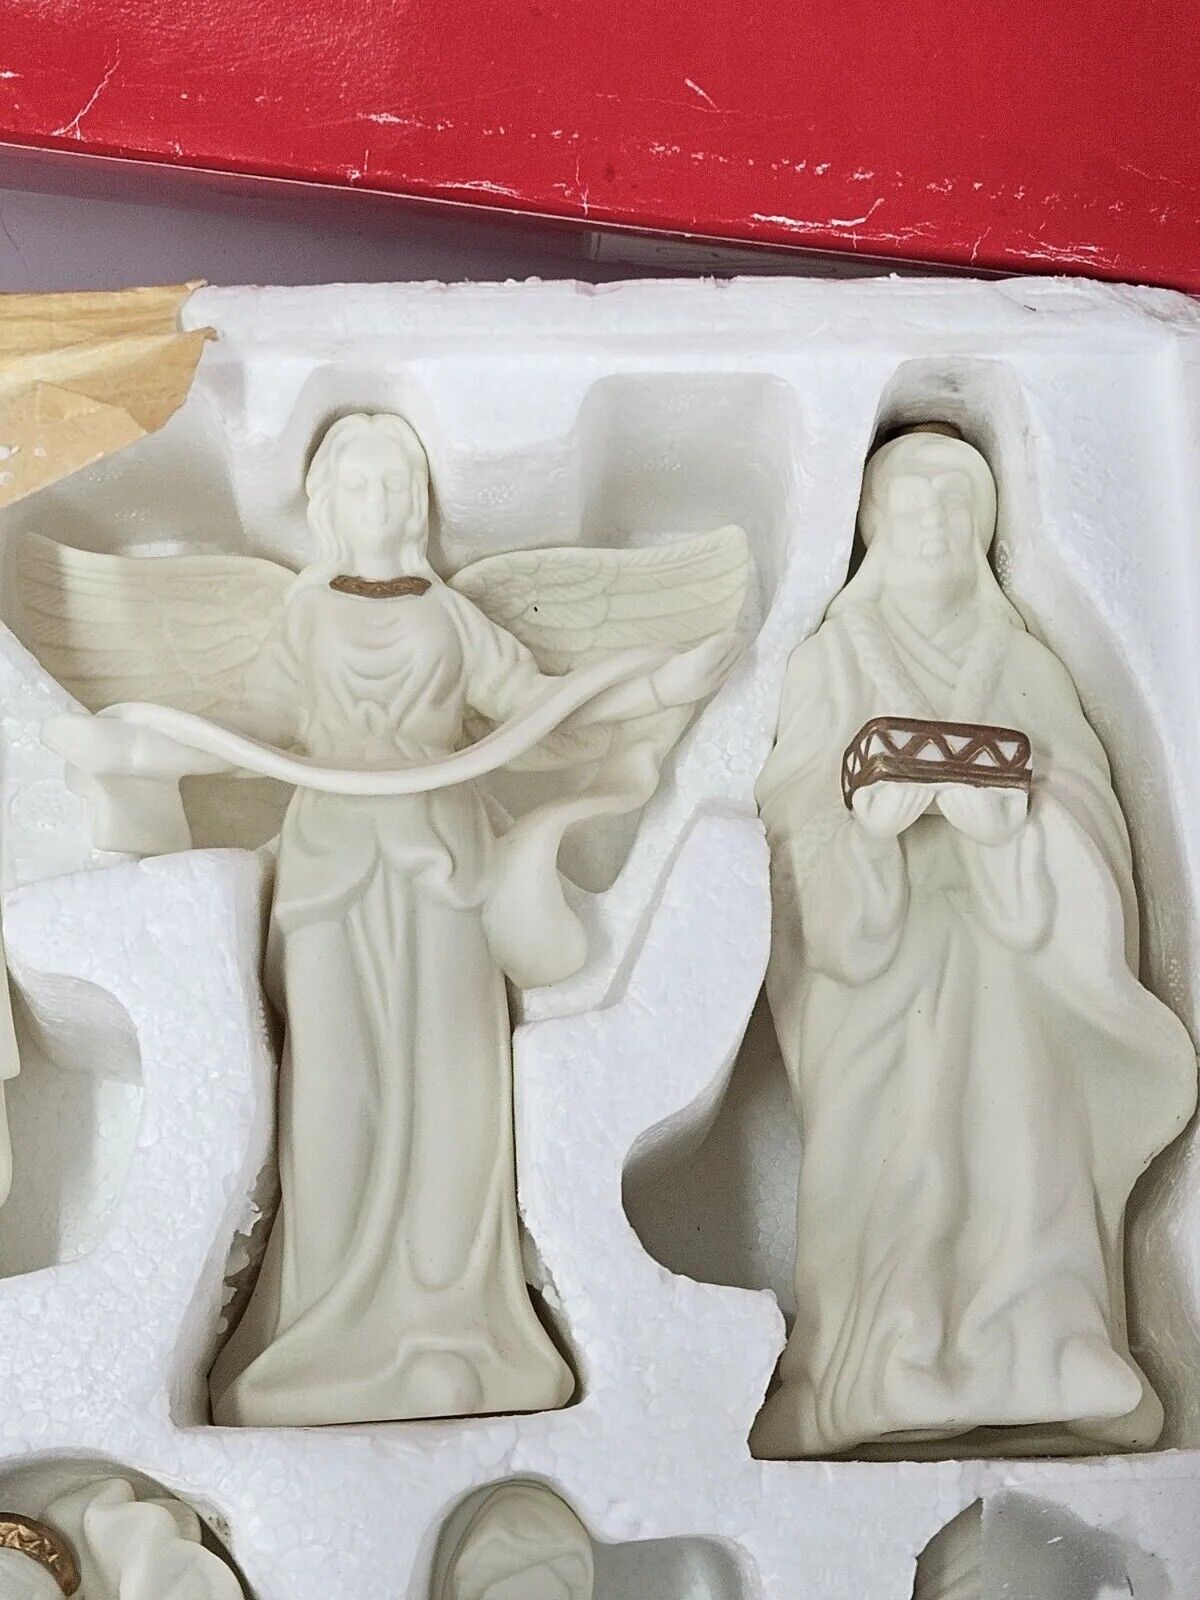 Holiday Home Accents 13 Piece Jade Porcelain Nativity Set Christmas Original Box